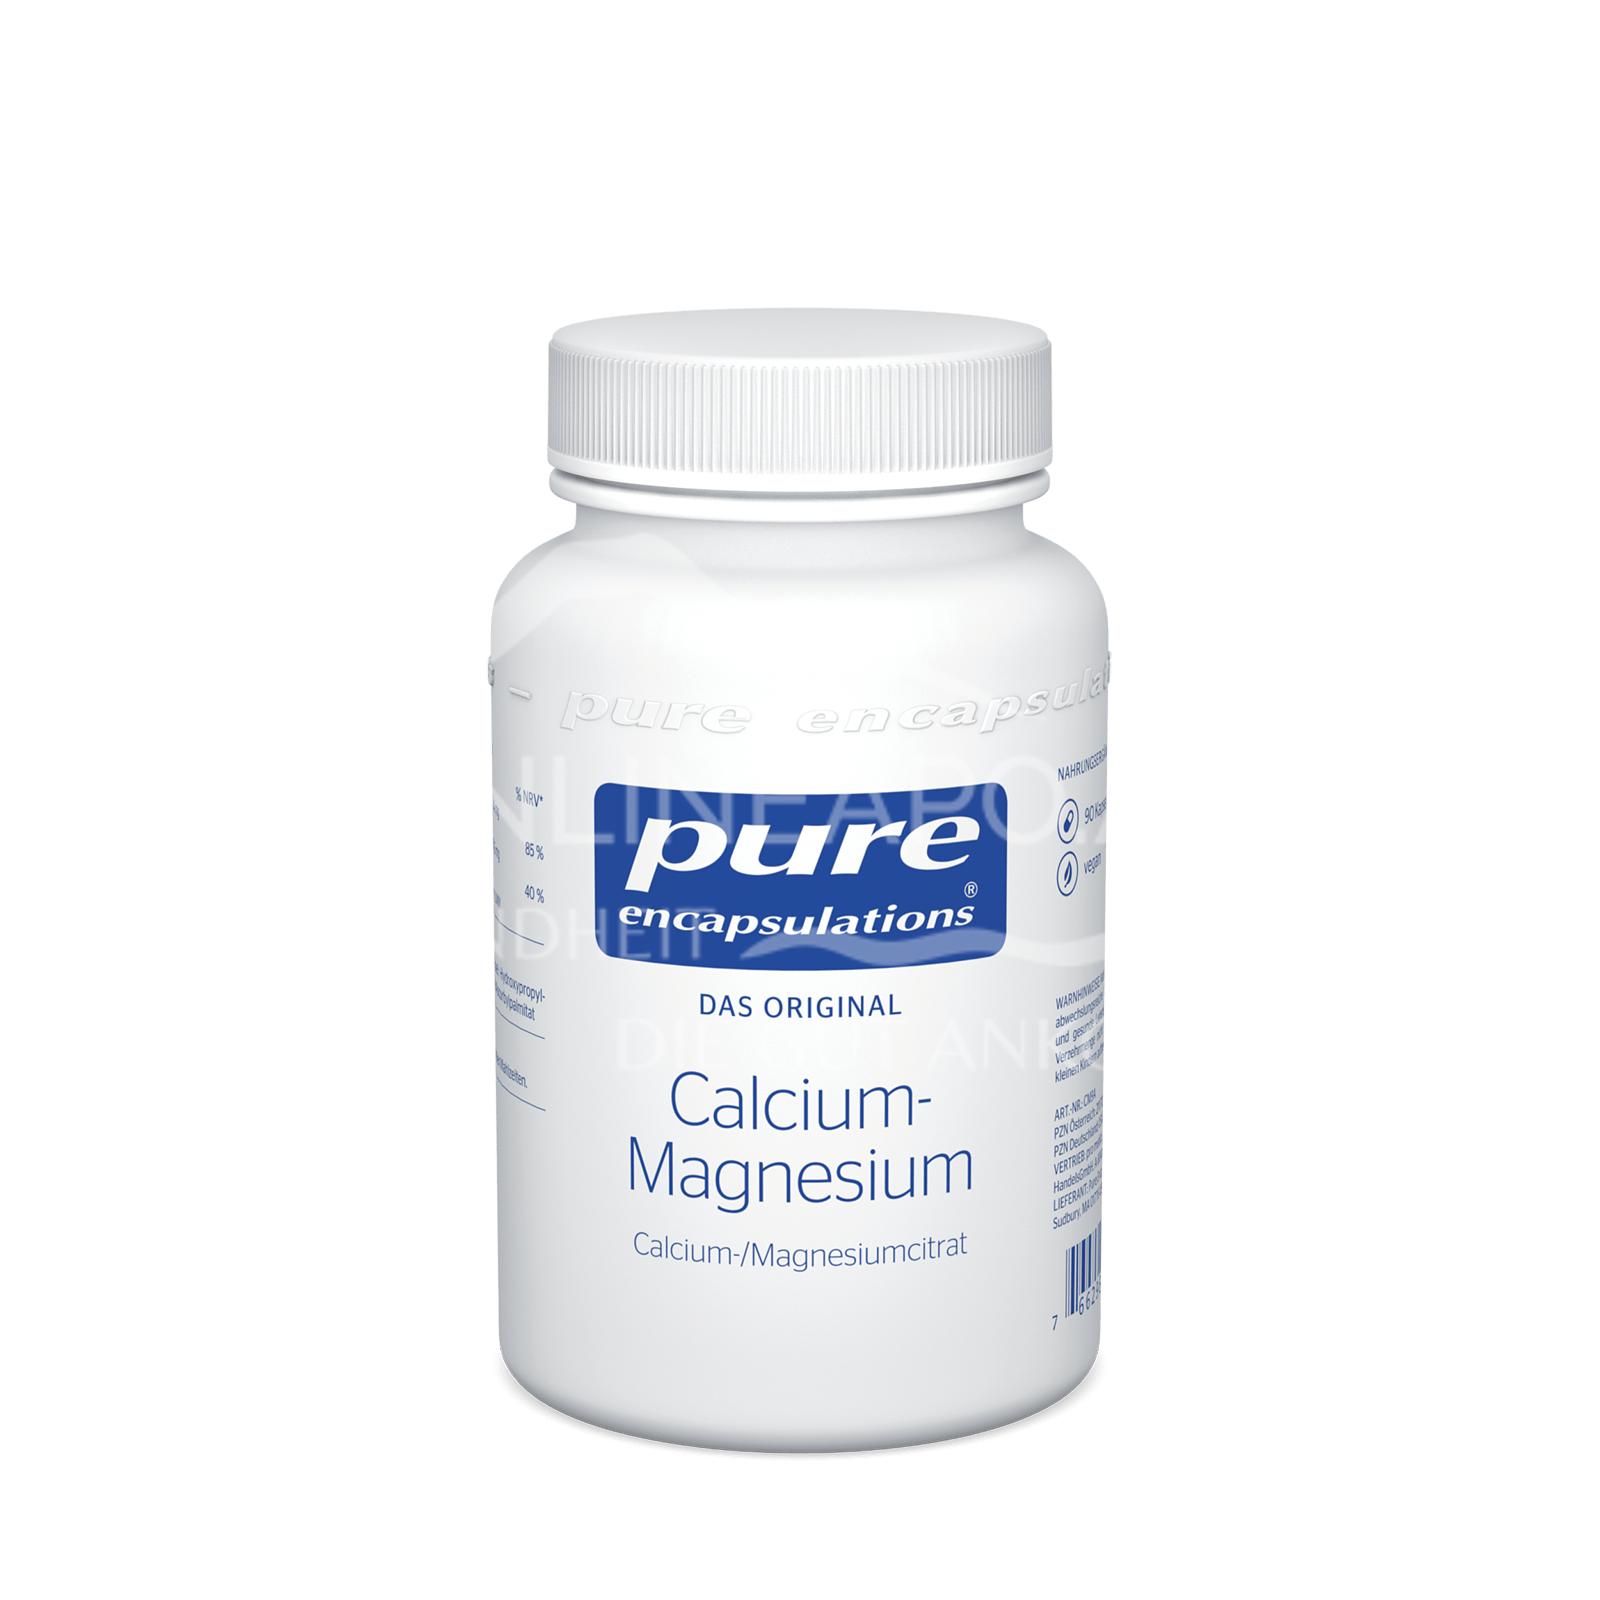 pure encapsulations® Calcium - Magnesium